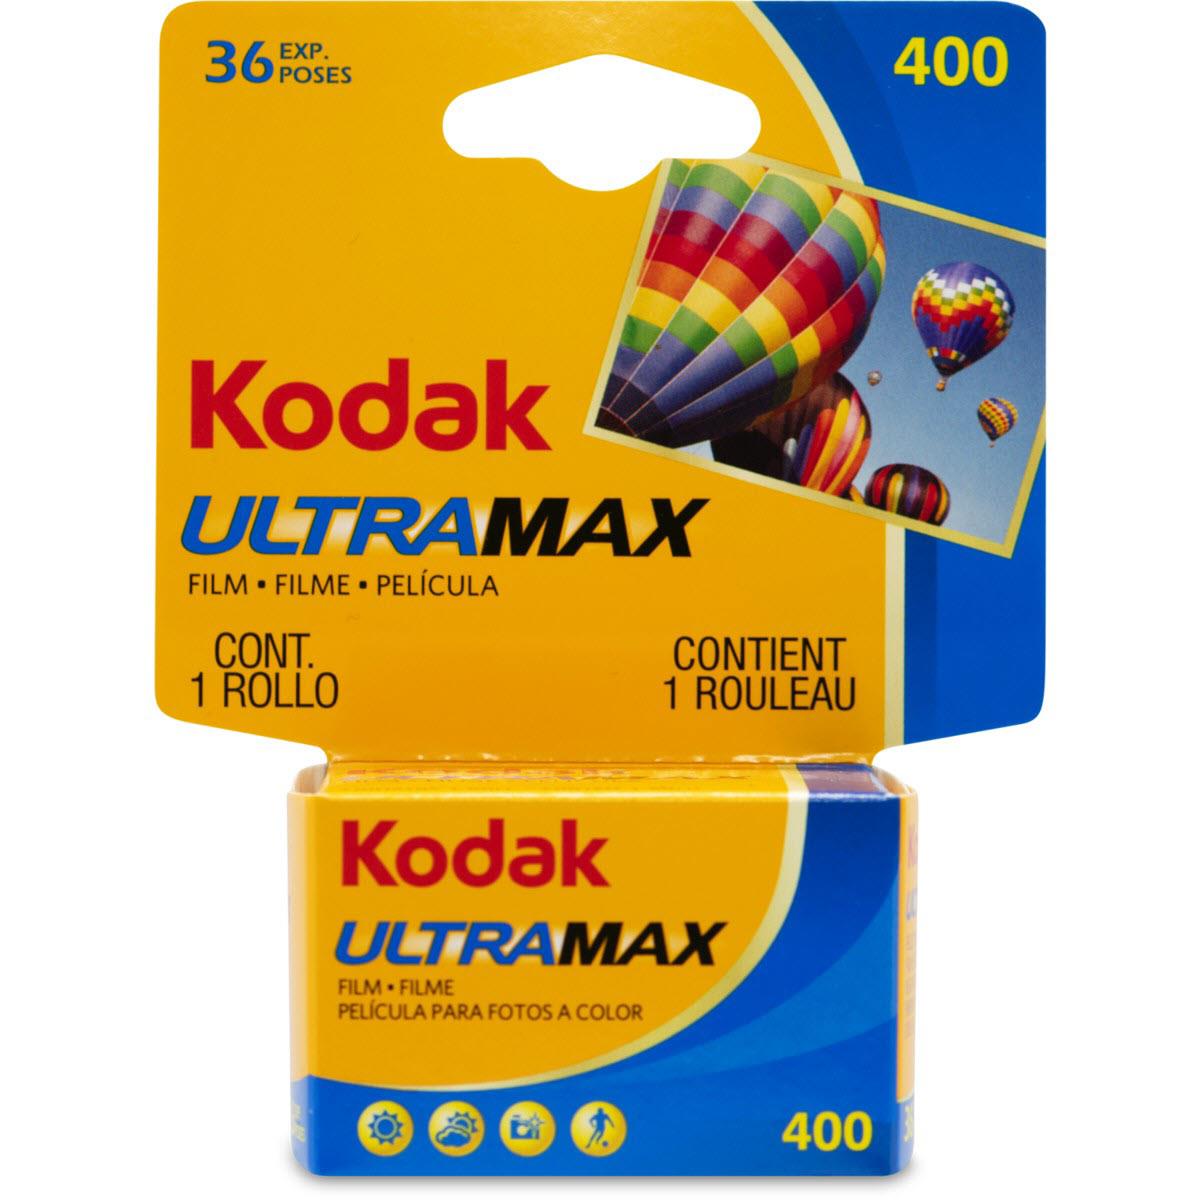 Kodak Ultramax 400 35mm Film (36 Exposure) - JB Hi-Fi